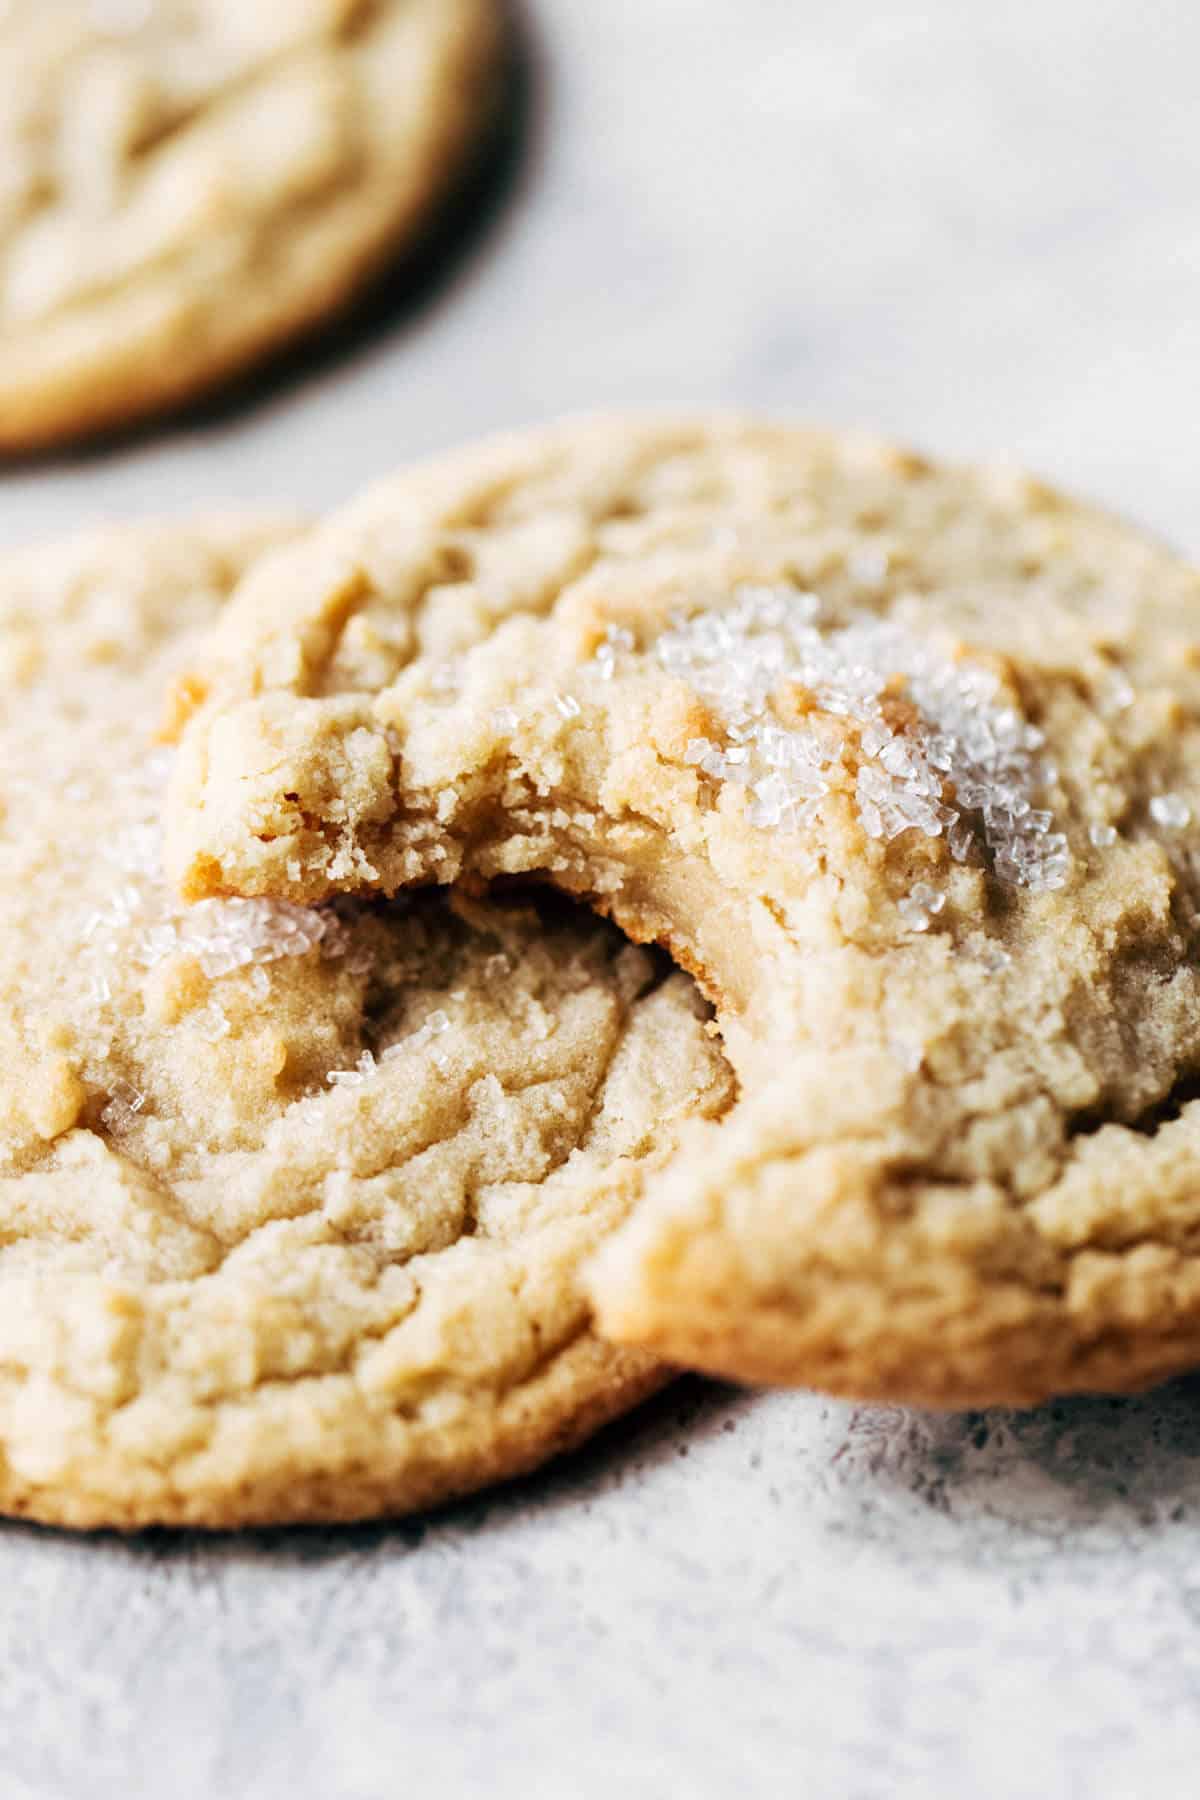 https://butternutbakeryblog.com/wp-content/uploads/2019/12/Soft-Sugar-Cookies.jpg